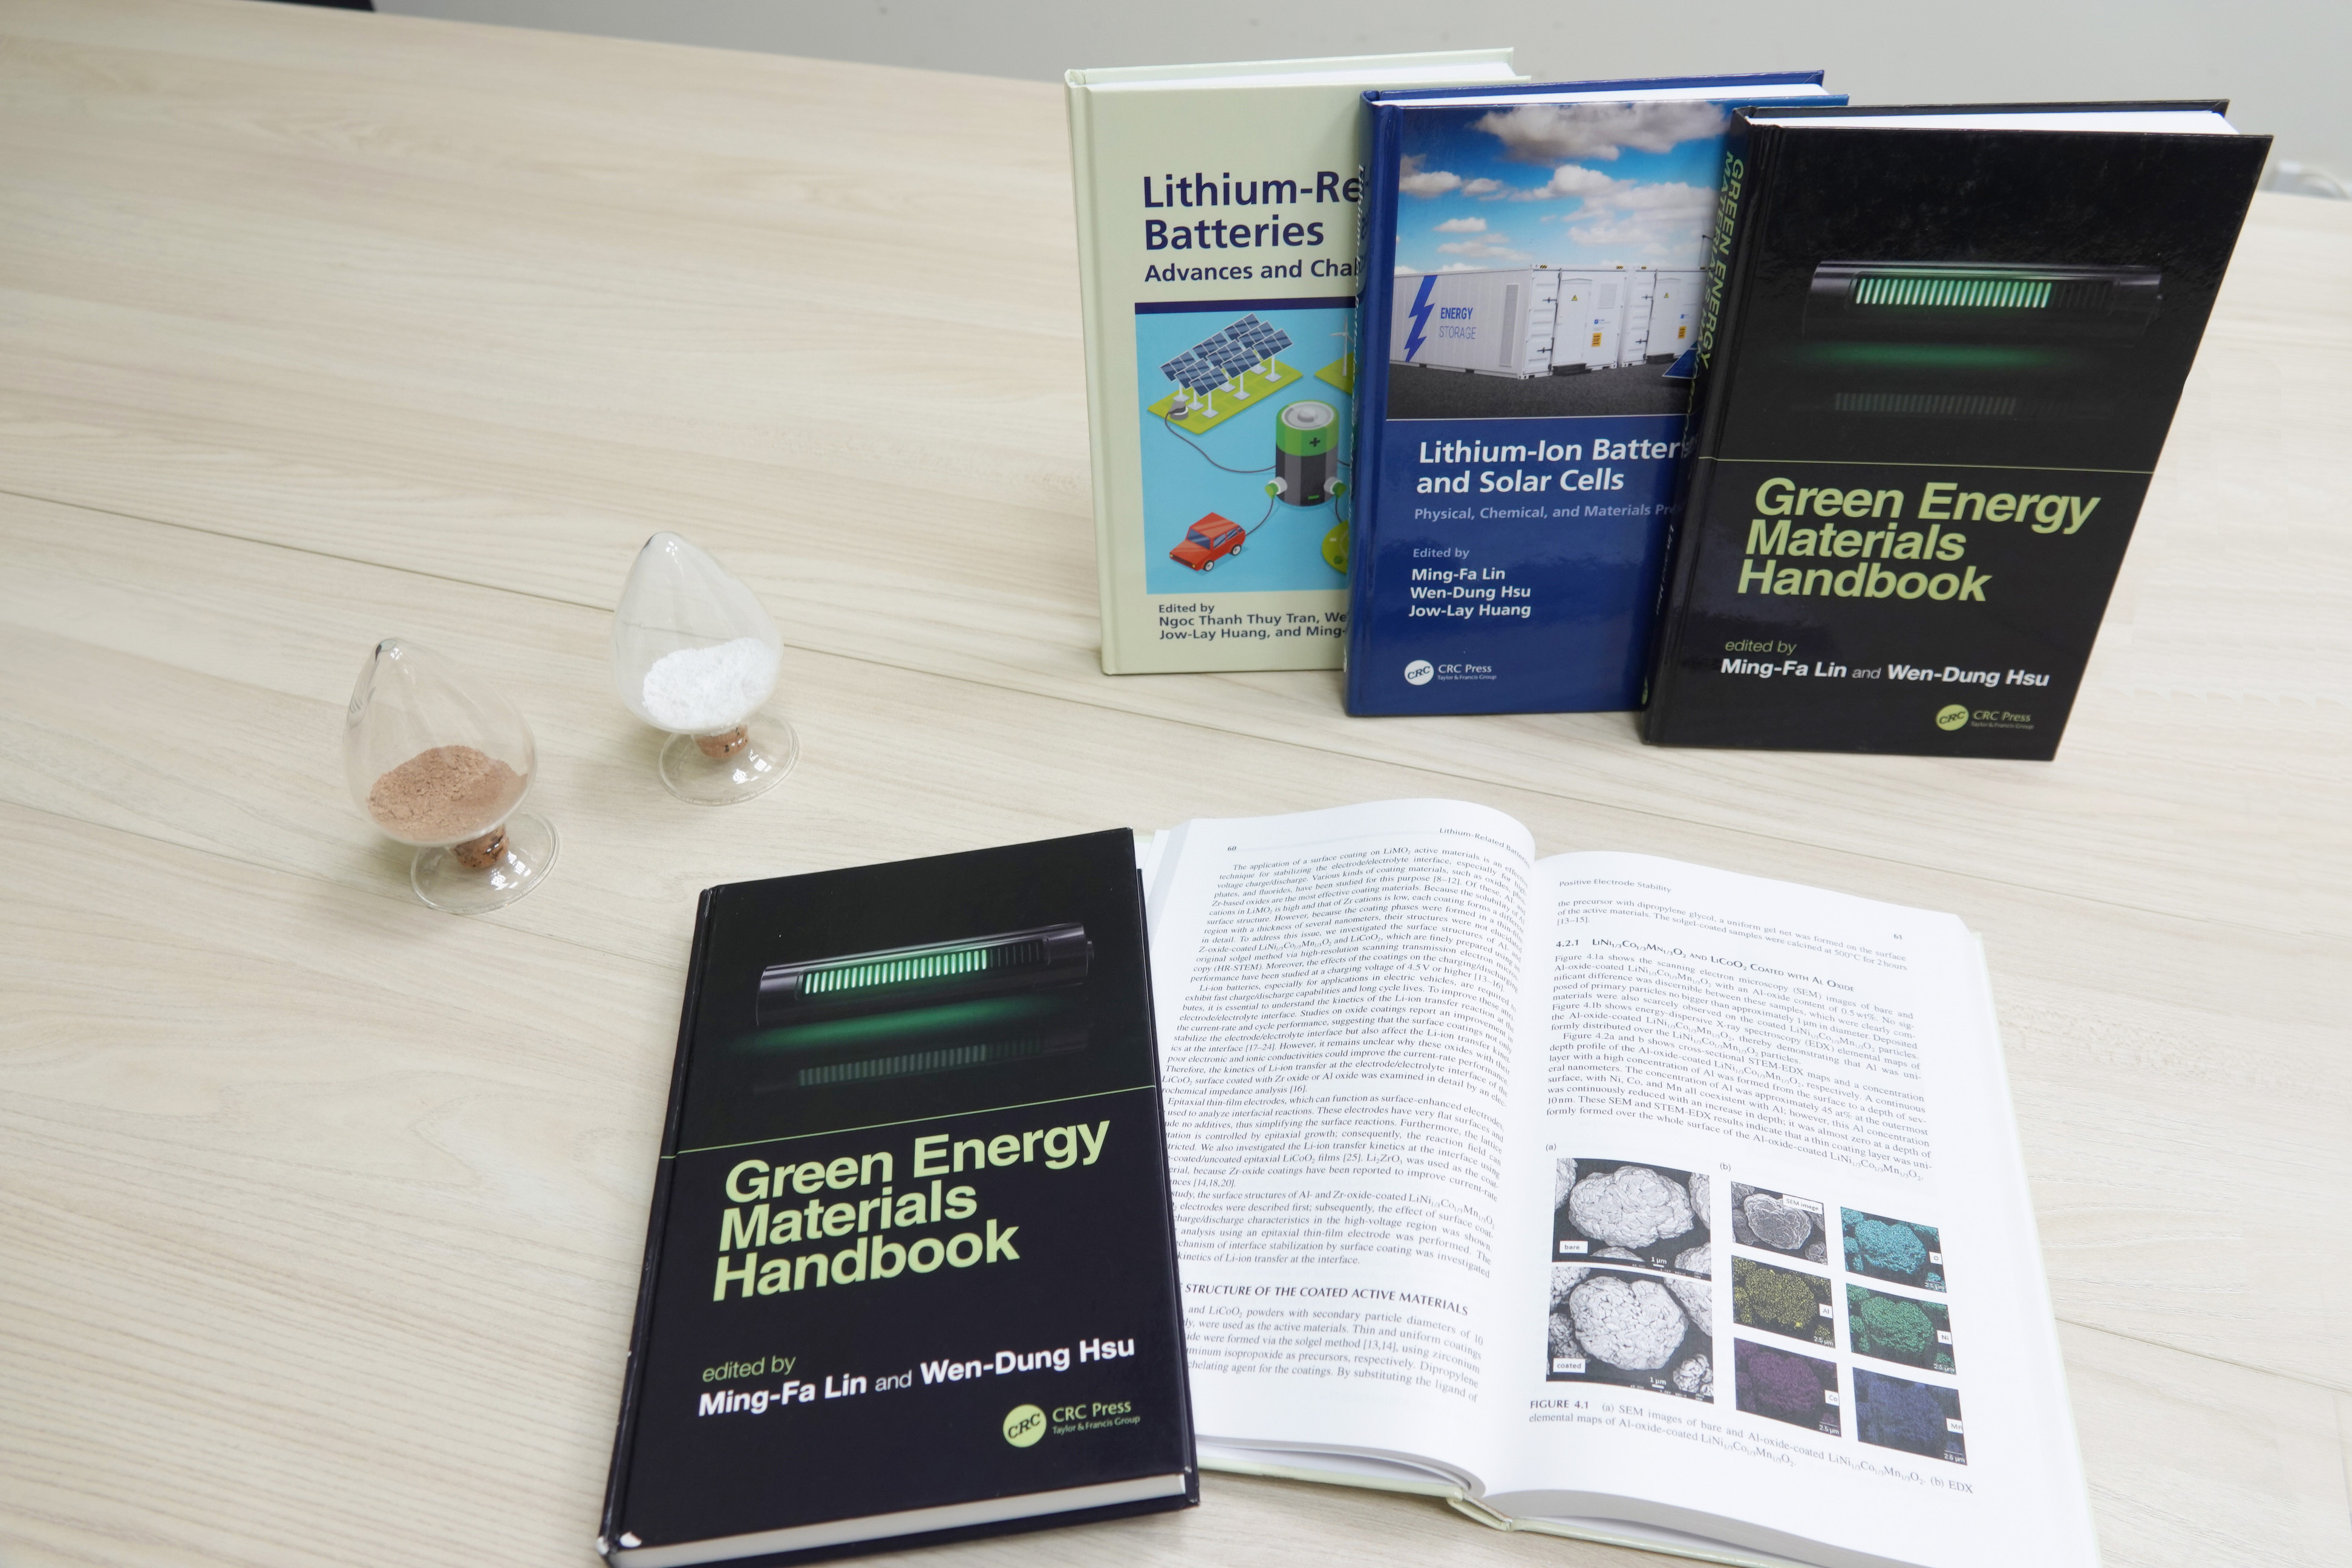 成大跨維綠能材料研究中心出版國際綠能系列專書